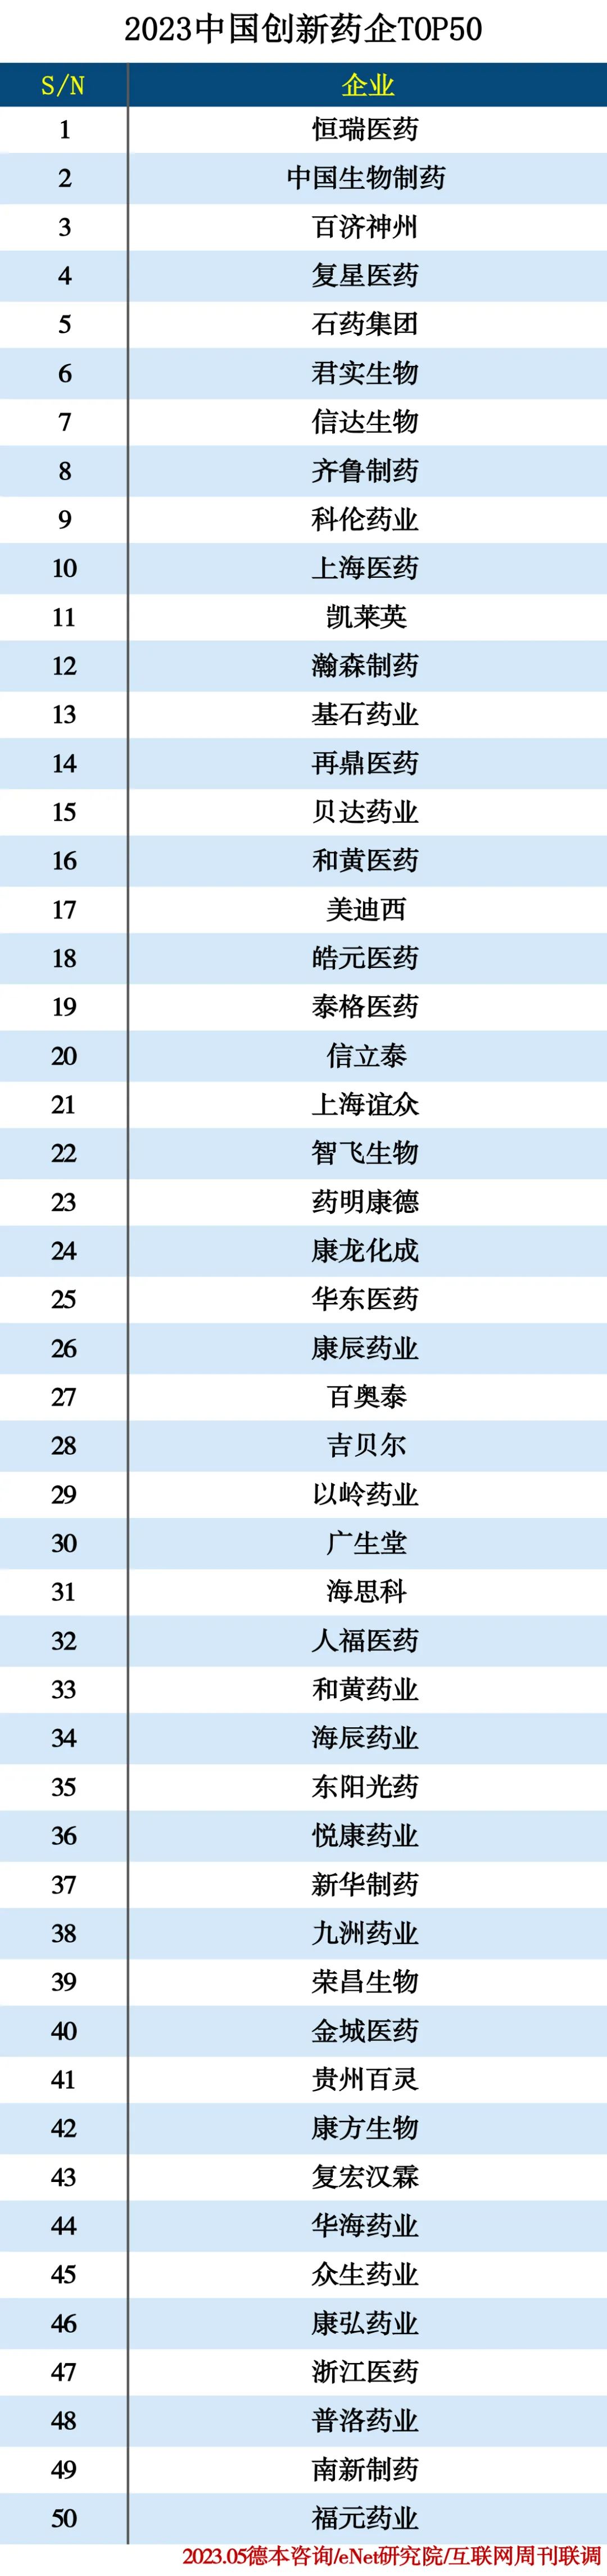 2023中国创新药企TOP50